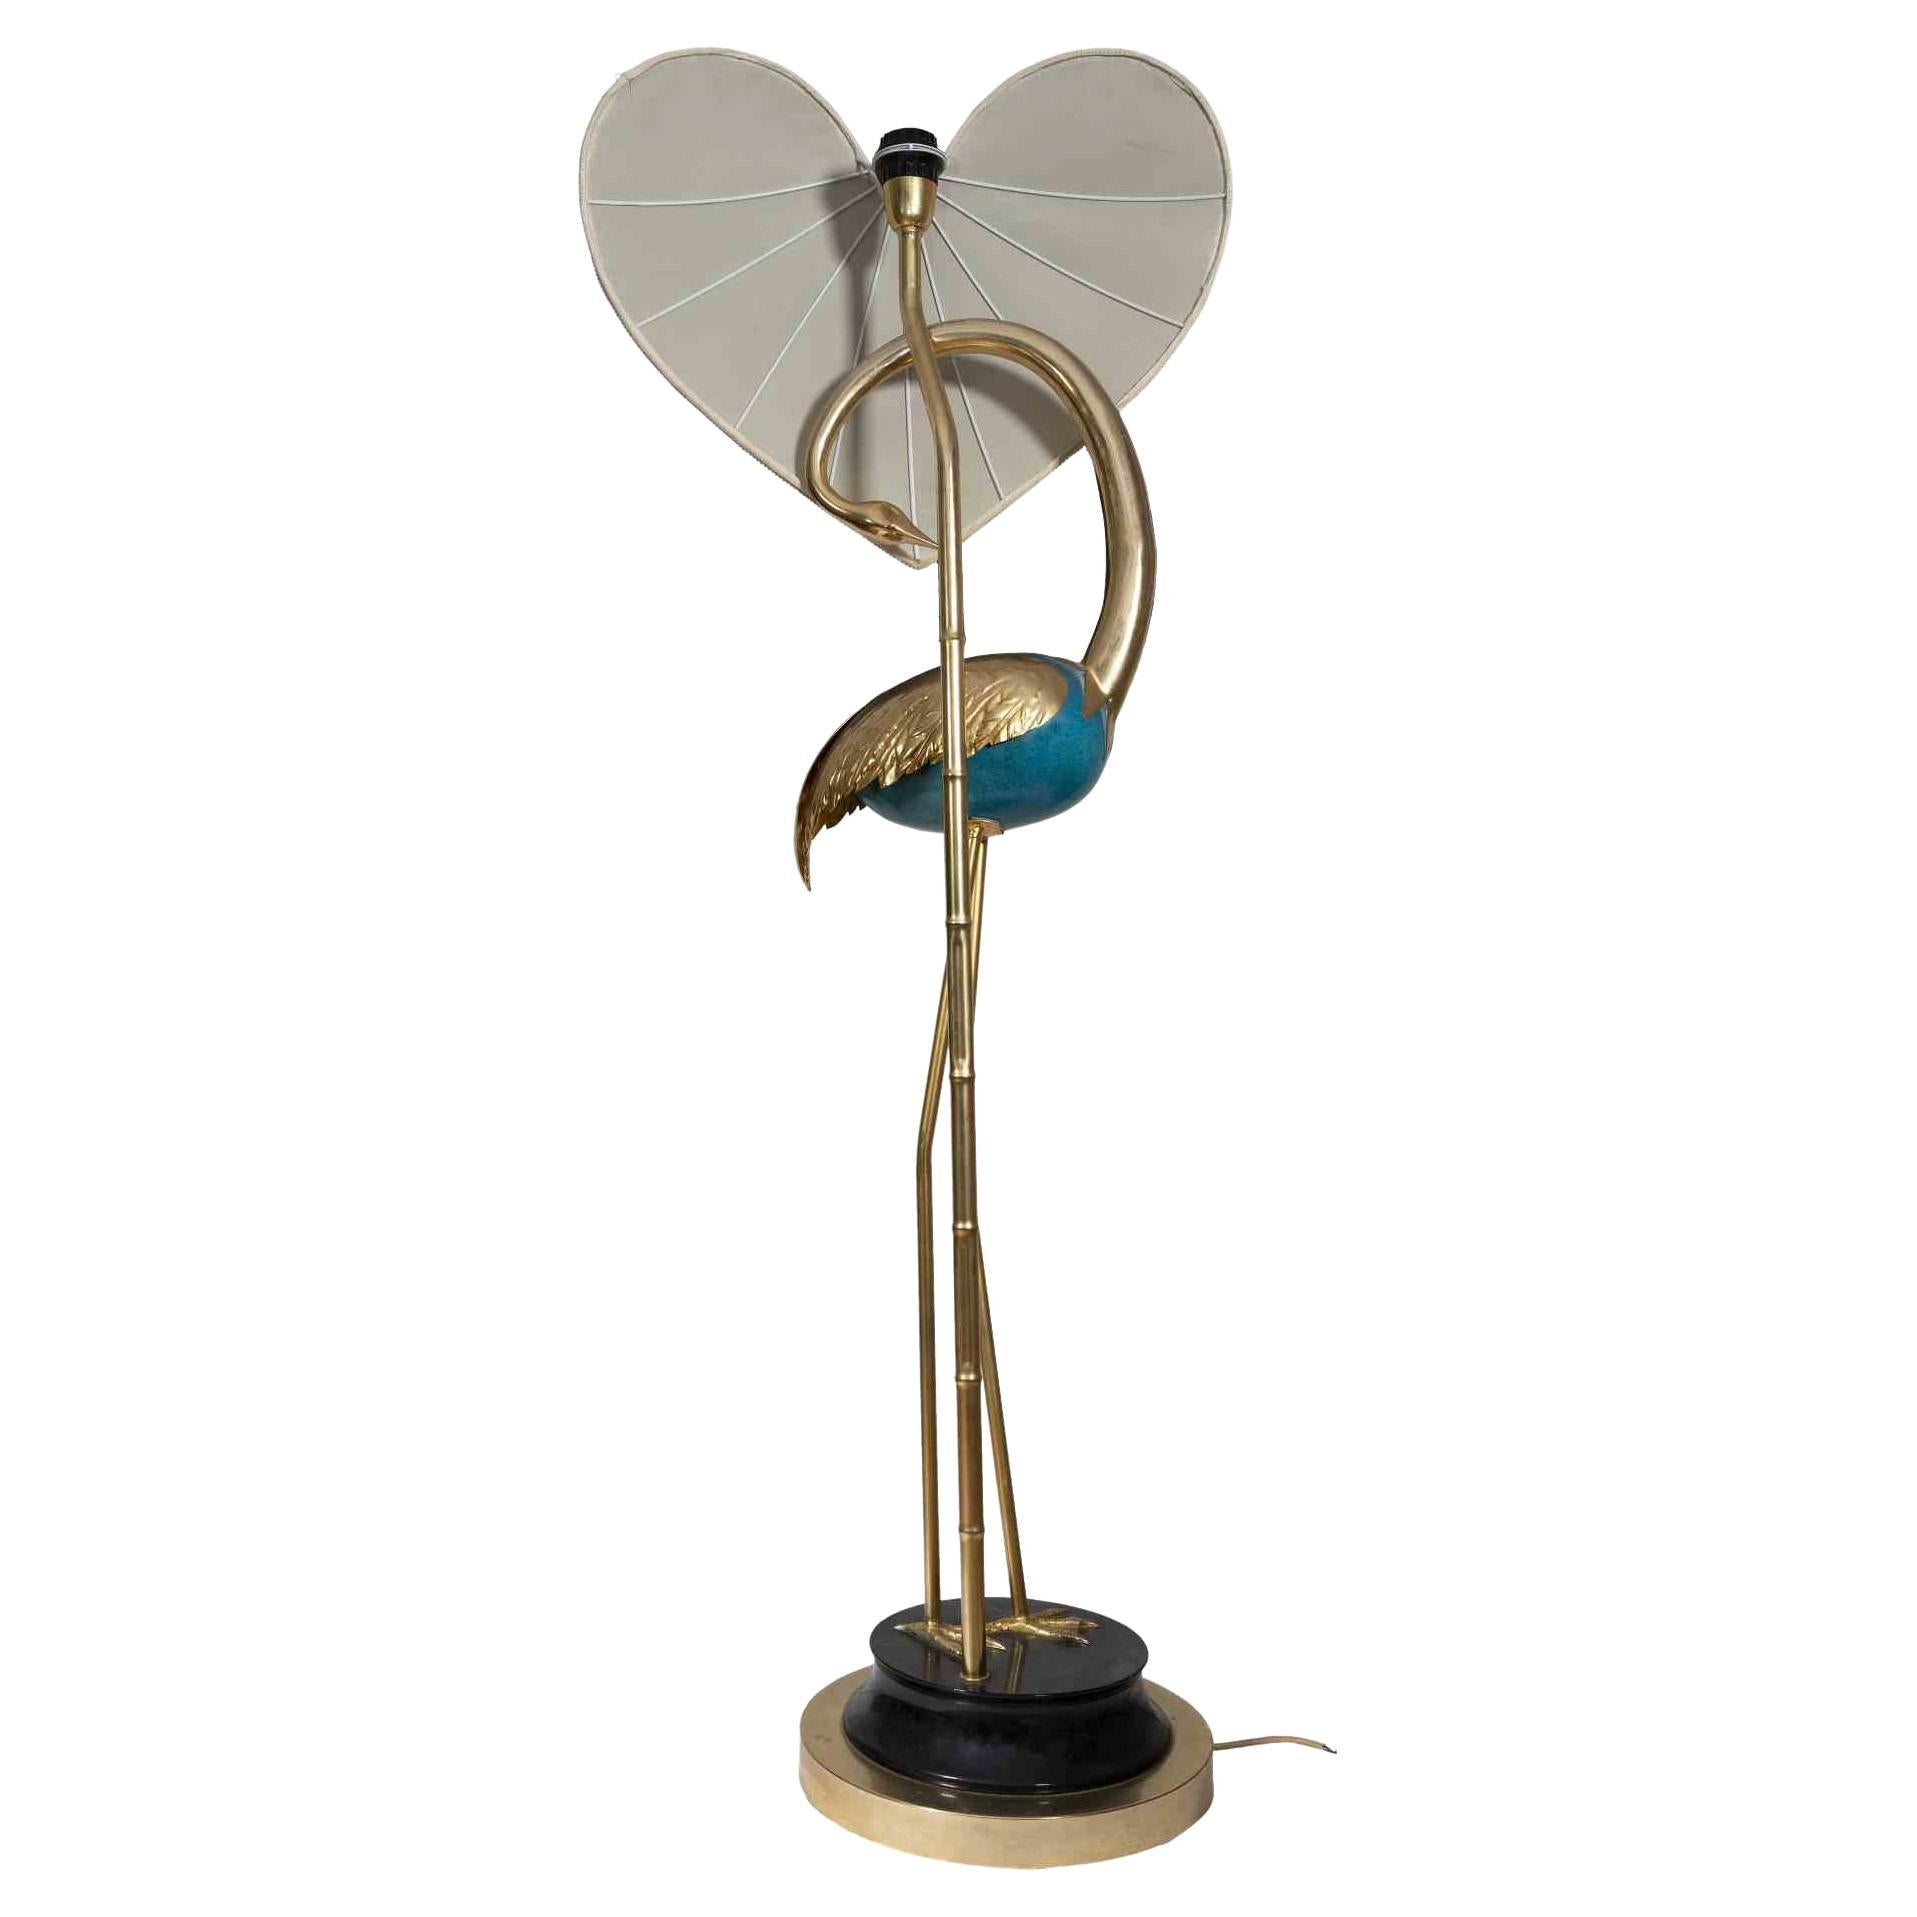 Vintage Flamingo Türkis und Gold Lampe ist ein Vintage-Design-Lampe von Antonio Pavia in Italien realisiert den 1970er Jahren.

Gold und türkisfarben emailliertes Messing im Hollywood-Regency-Stil. Sockel aus lackiertem Holz und Messing. Benötigt